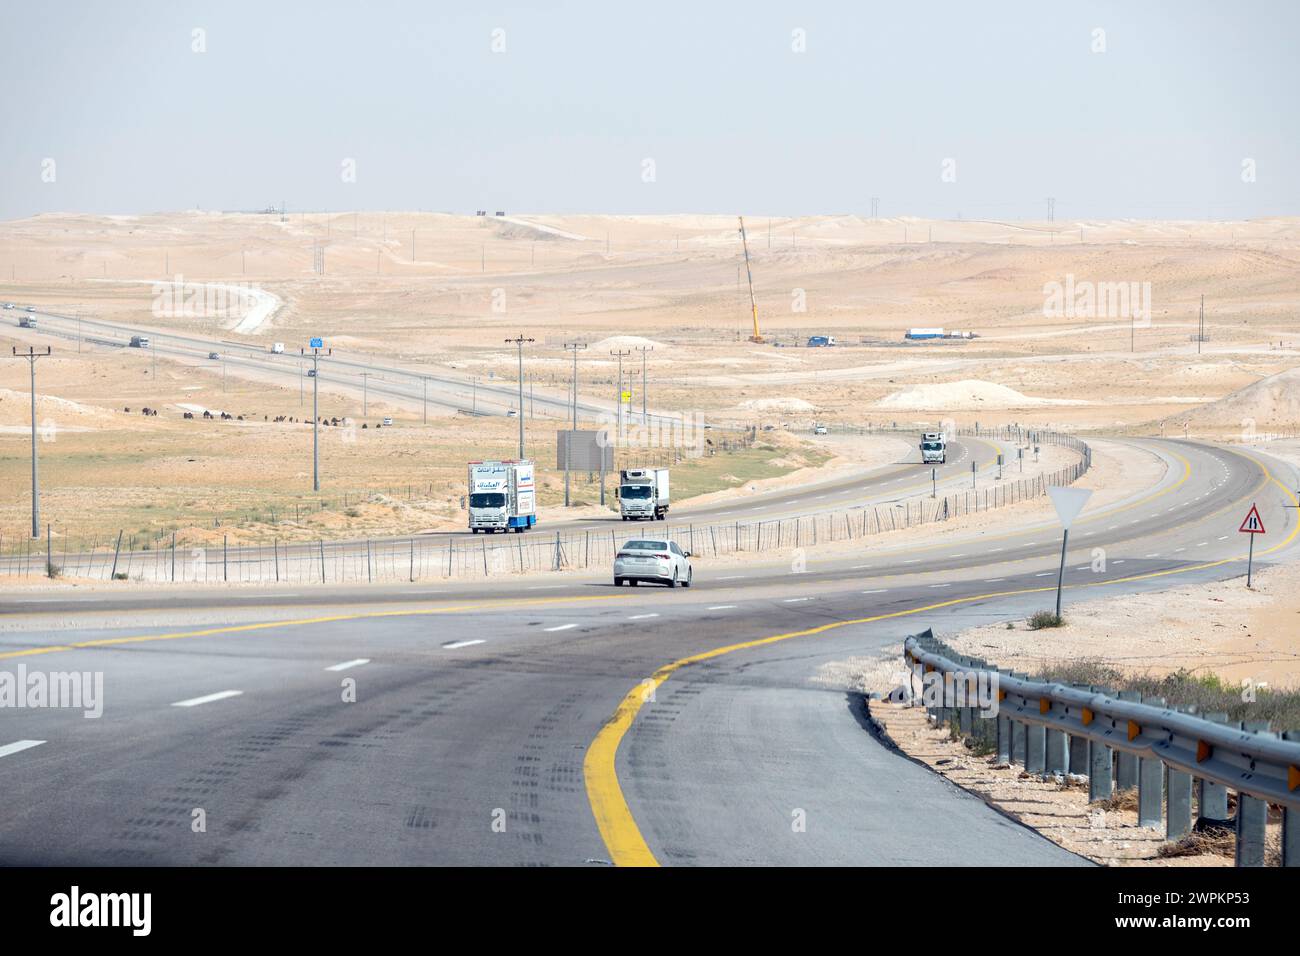 Signe au désert saoudien pour donner les distances de la ville principale aux voyageurs. Routes du désert saoudien Banque D'Images